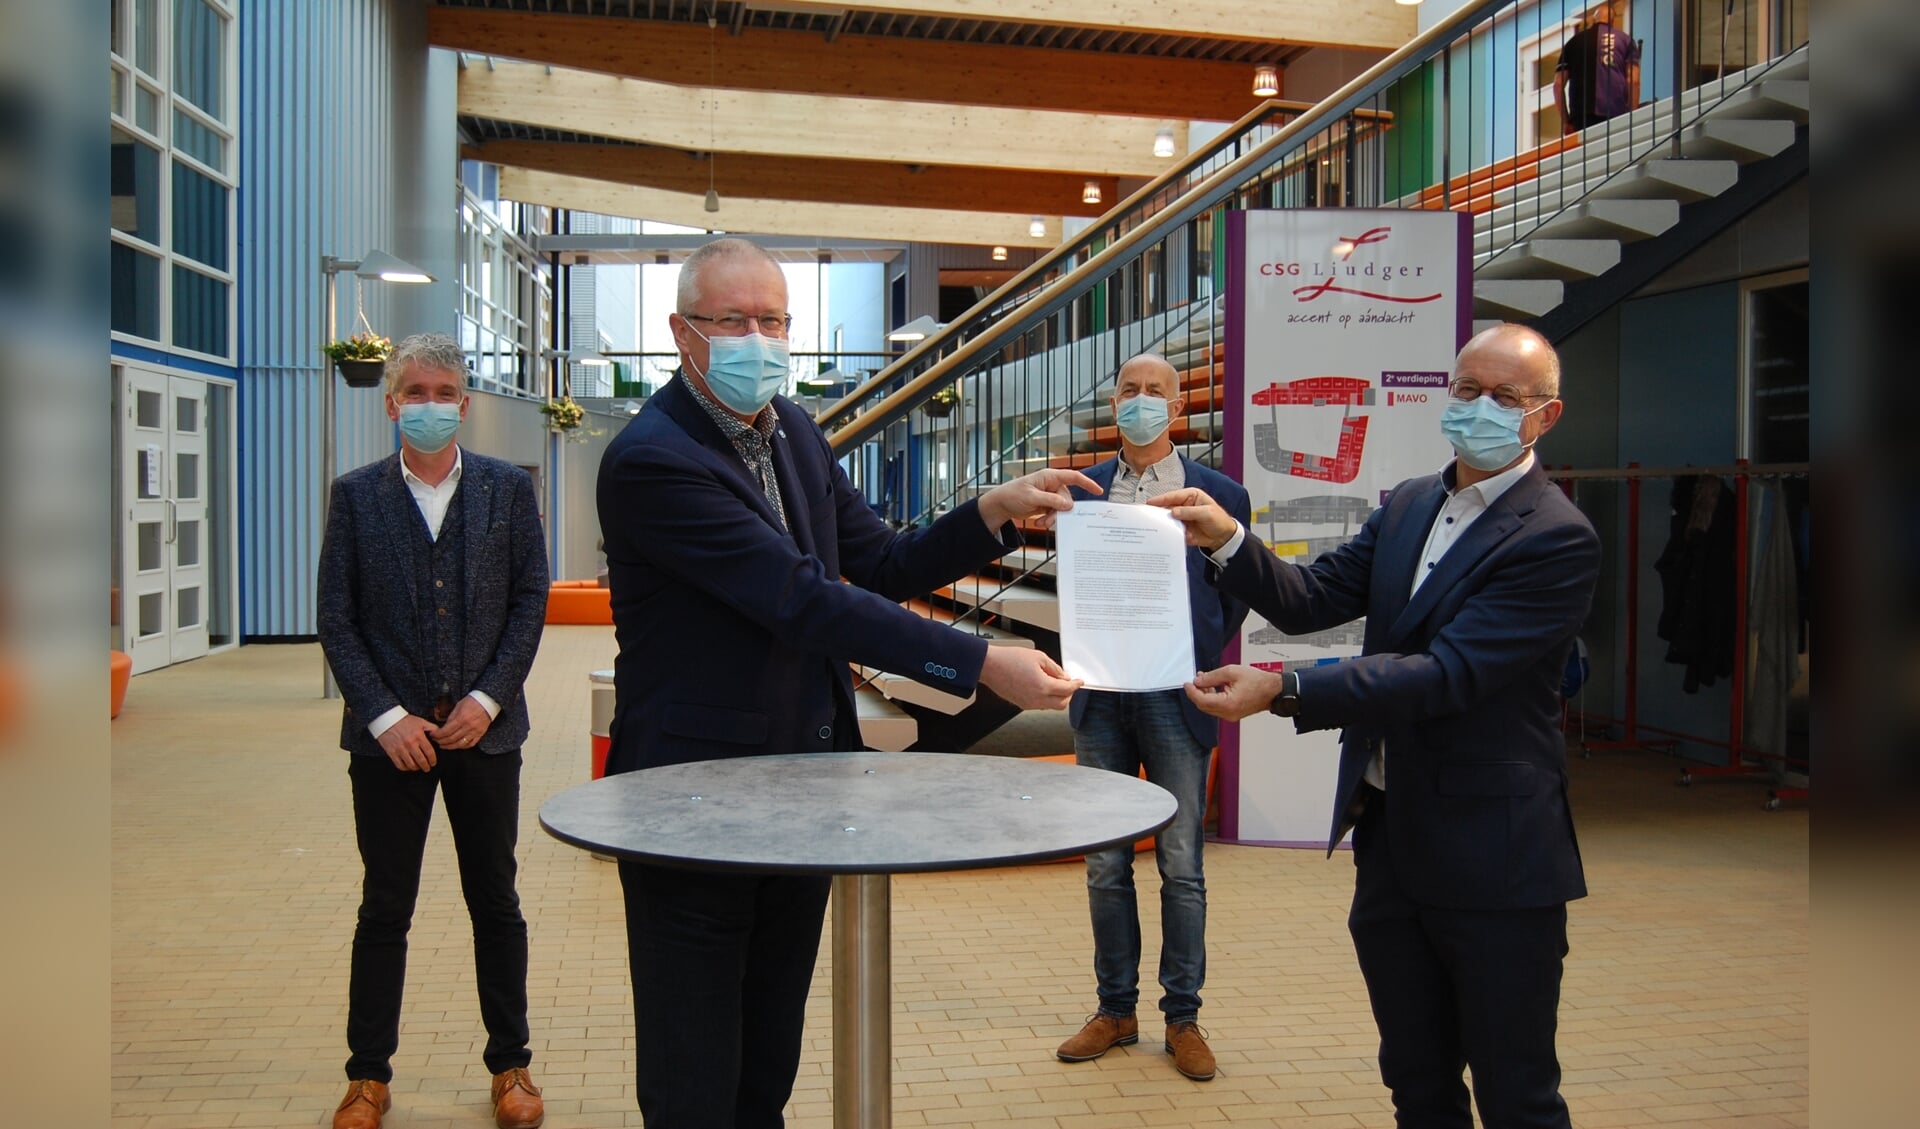 Directieleden CSG Liudger en ROC Friese Poort ondertekenen samenwerkingsovereenkomst.